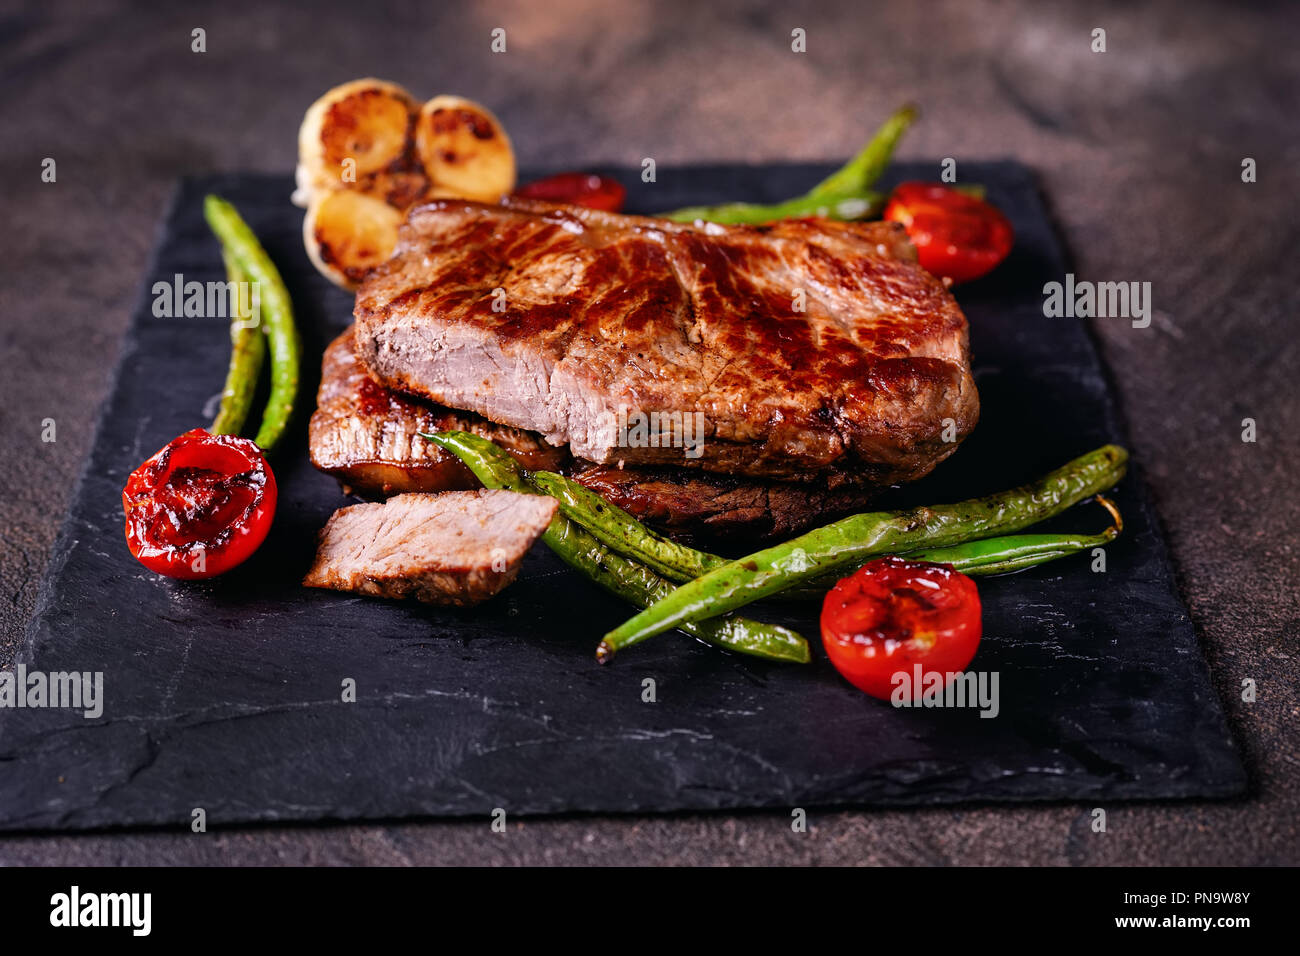 Kostliche Beaf Steaks Mit Gemuse Auf Schiefer Platte Vorbereitet Stockfotografie Alamy